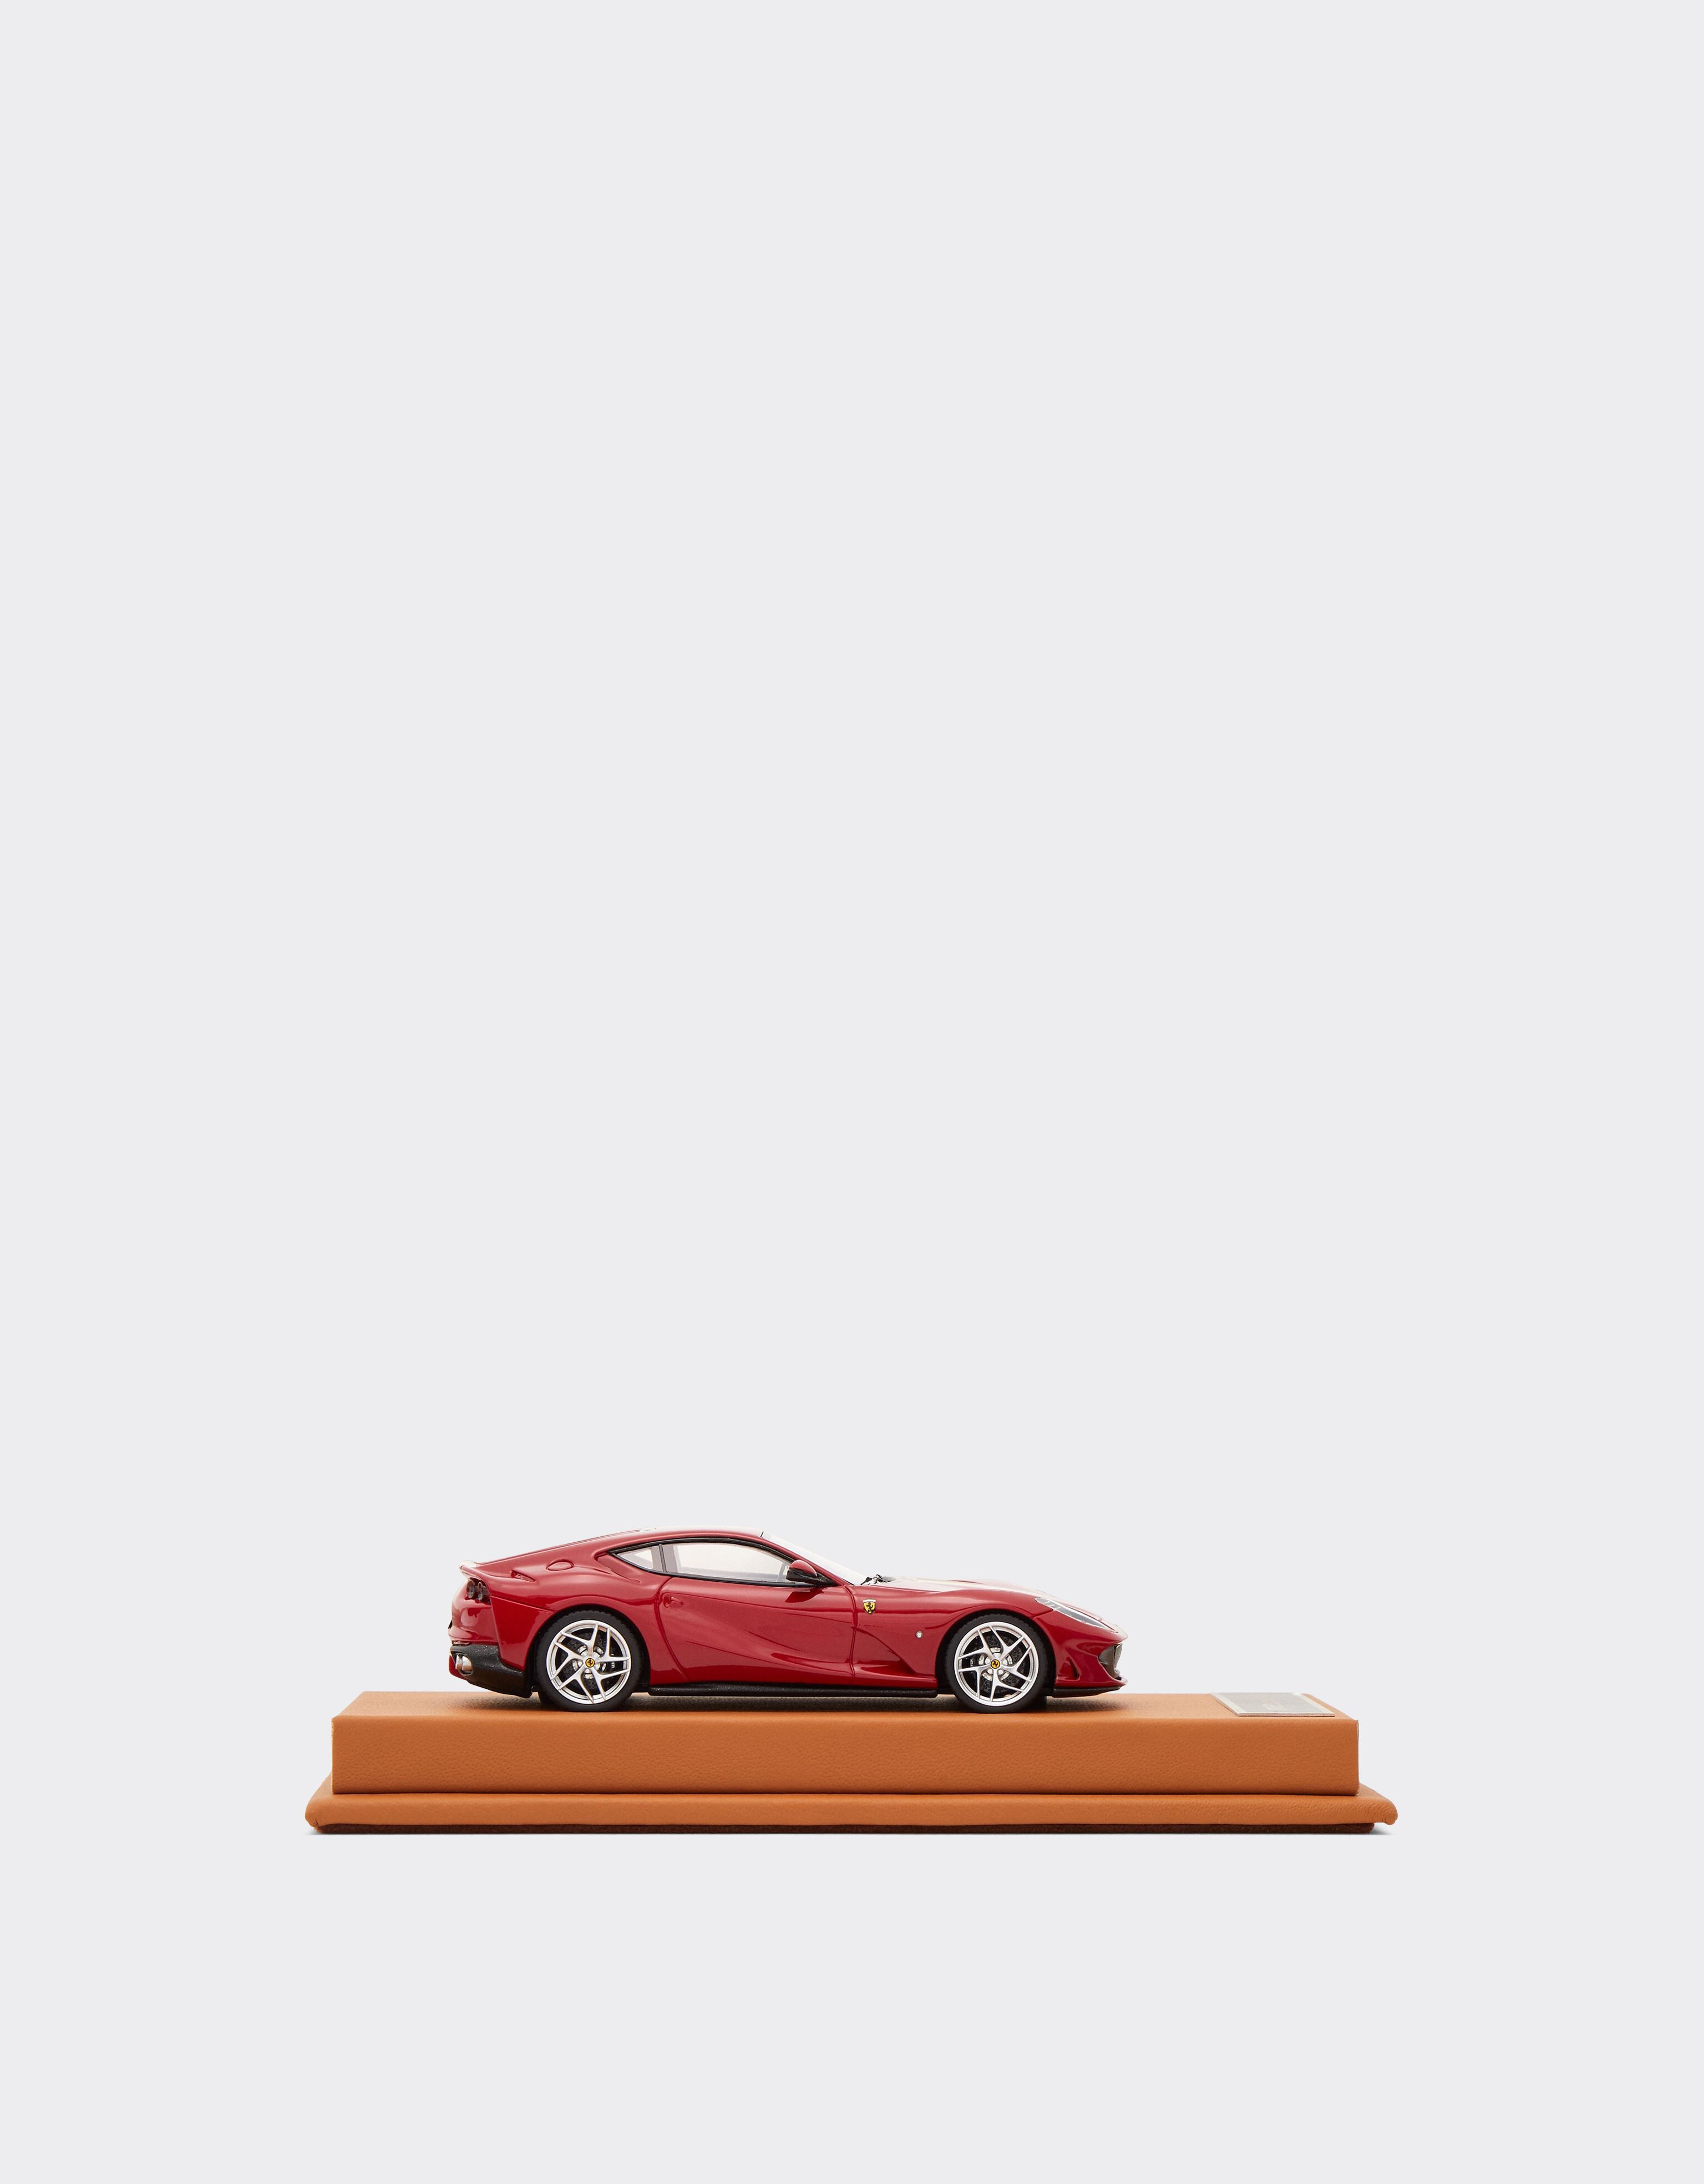 Ferrari Modellauto Ferrari 812 Superfast im Maßstab 1:43 Rot L7814f